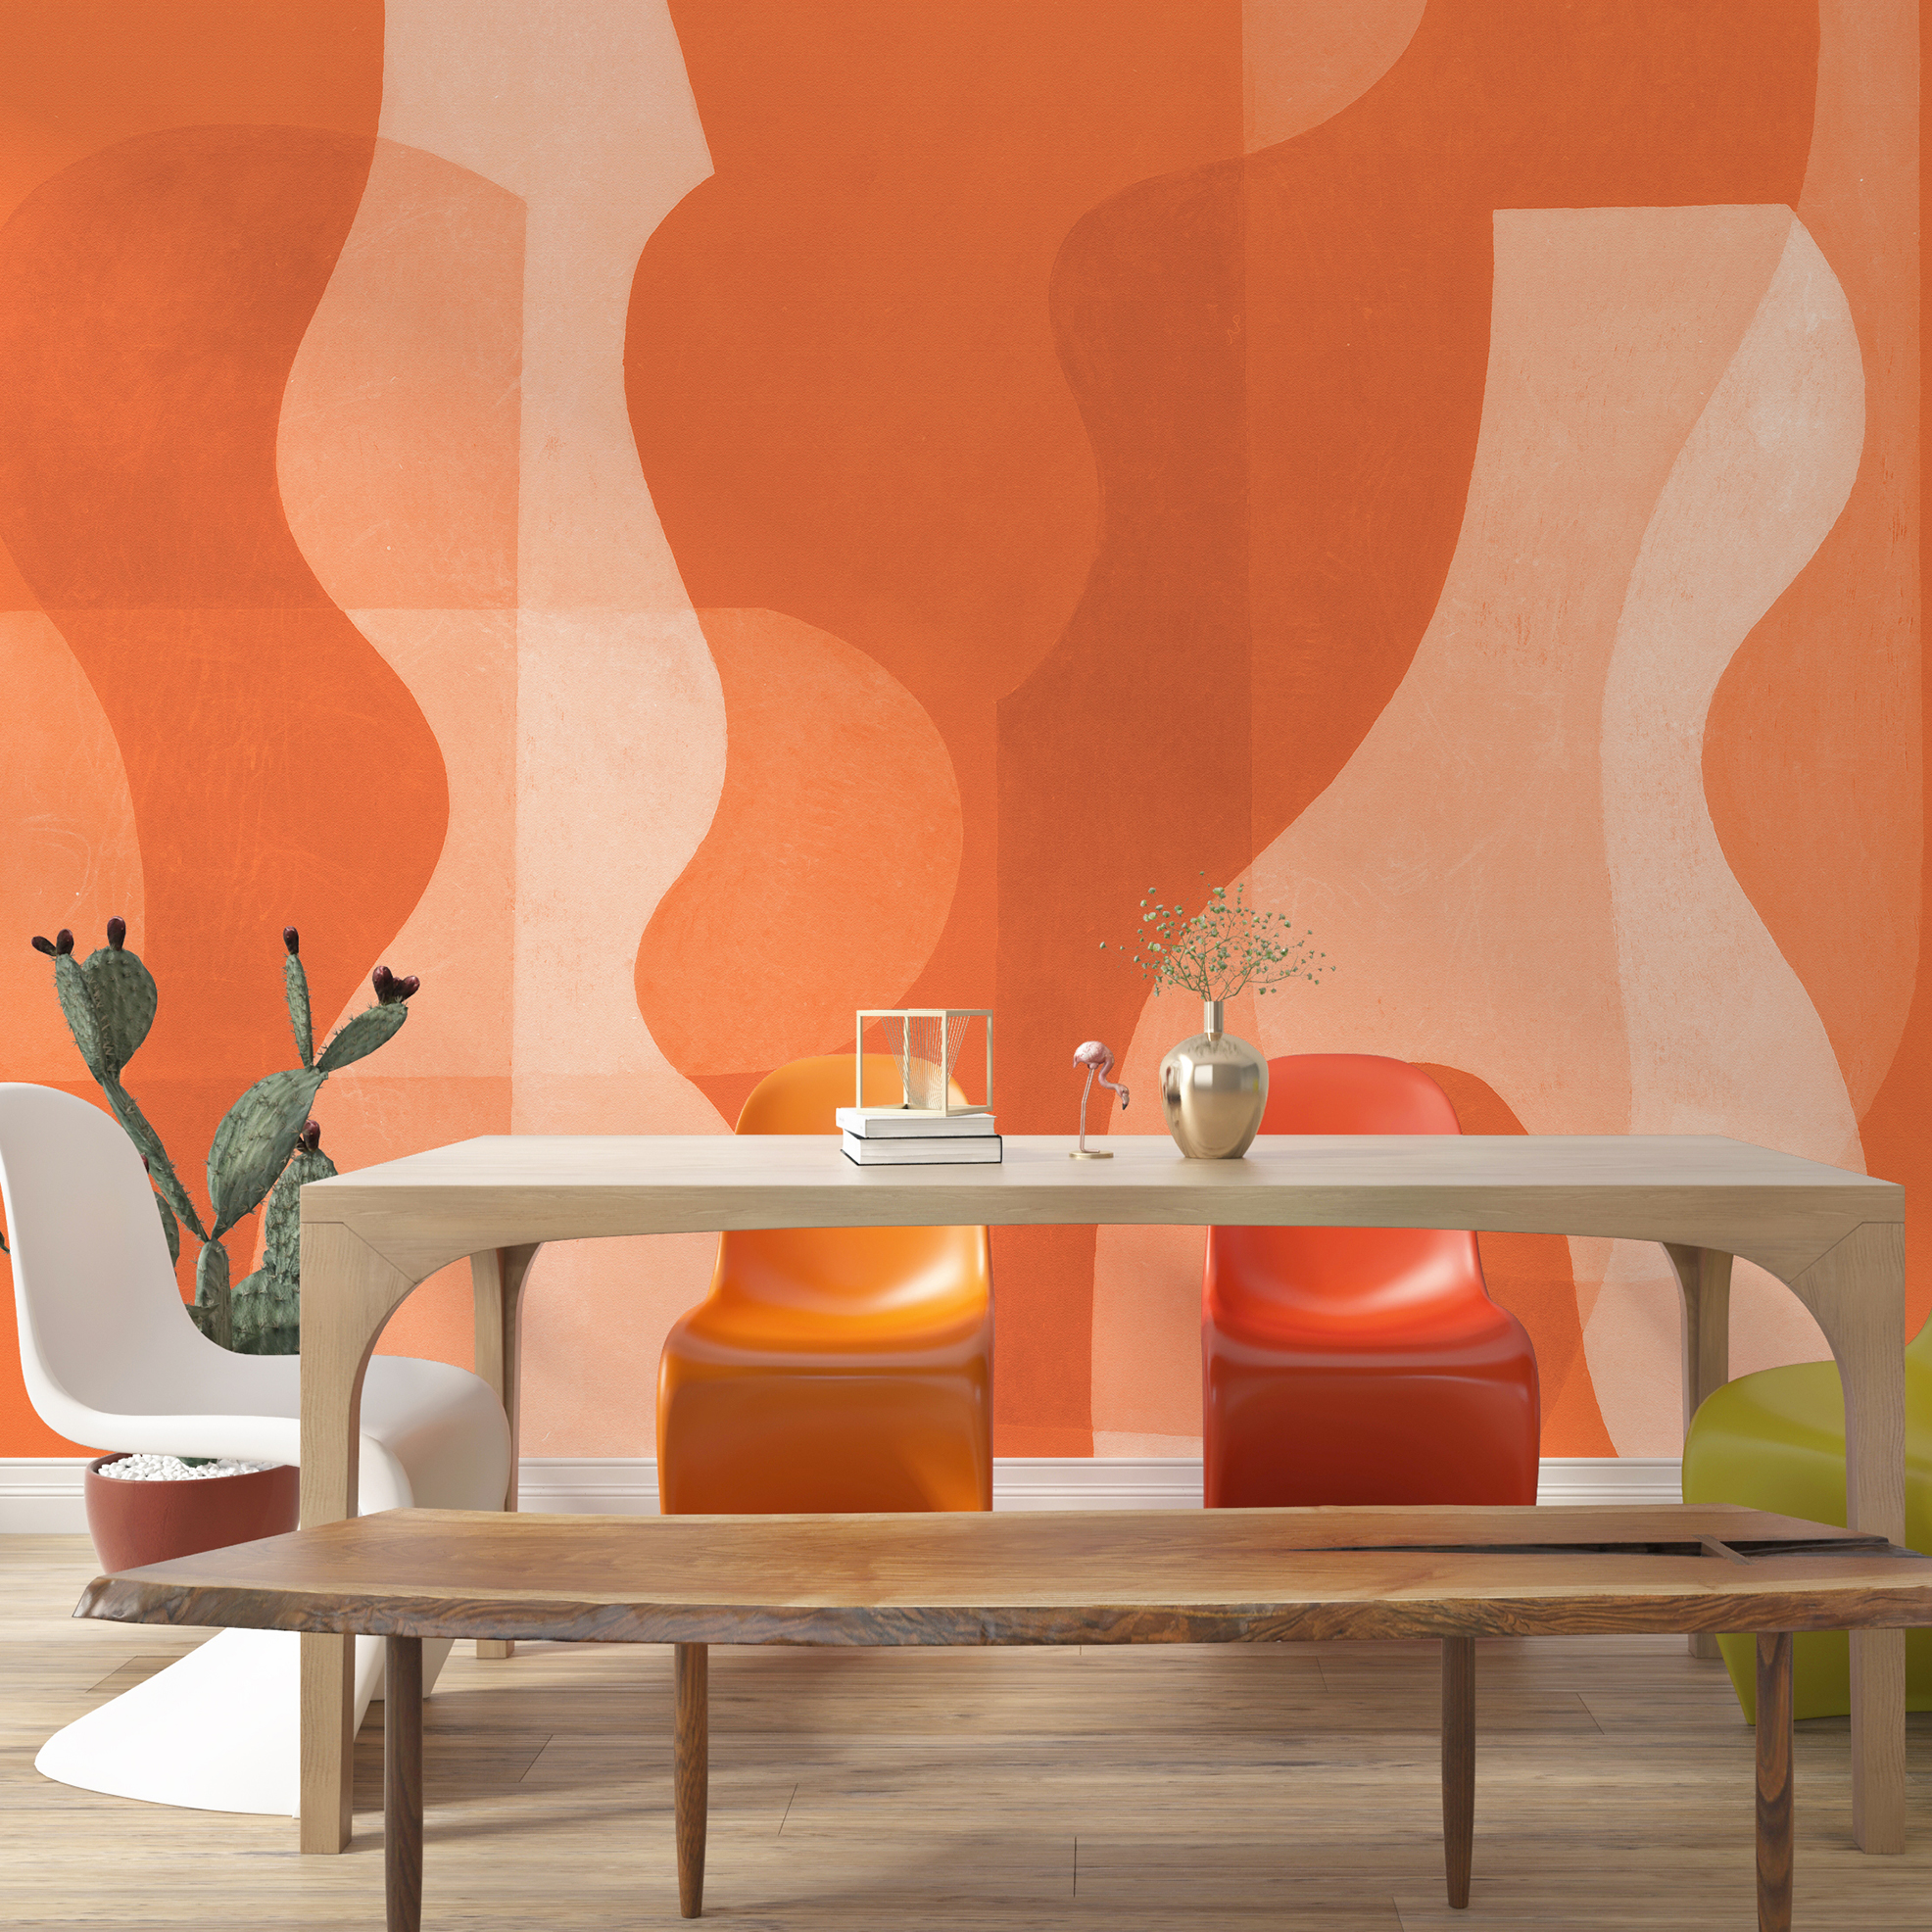 Manufakturqualität trifft auf Nachhaltigkeit mit den gesunden Wandbildern von Hohenberger in orange